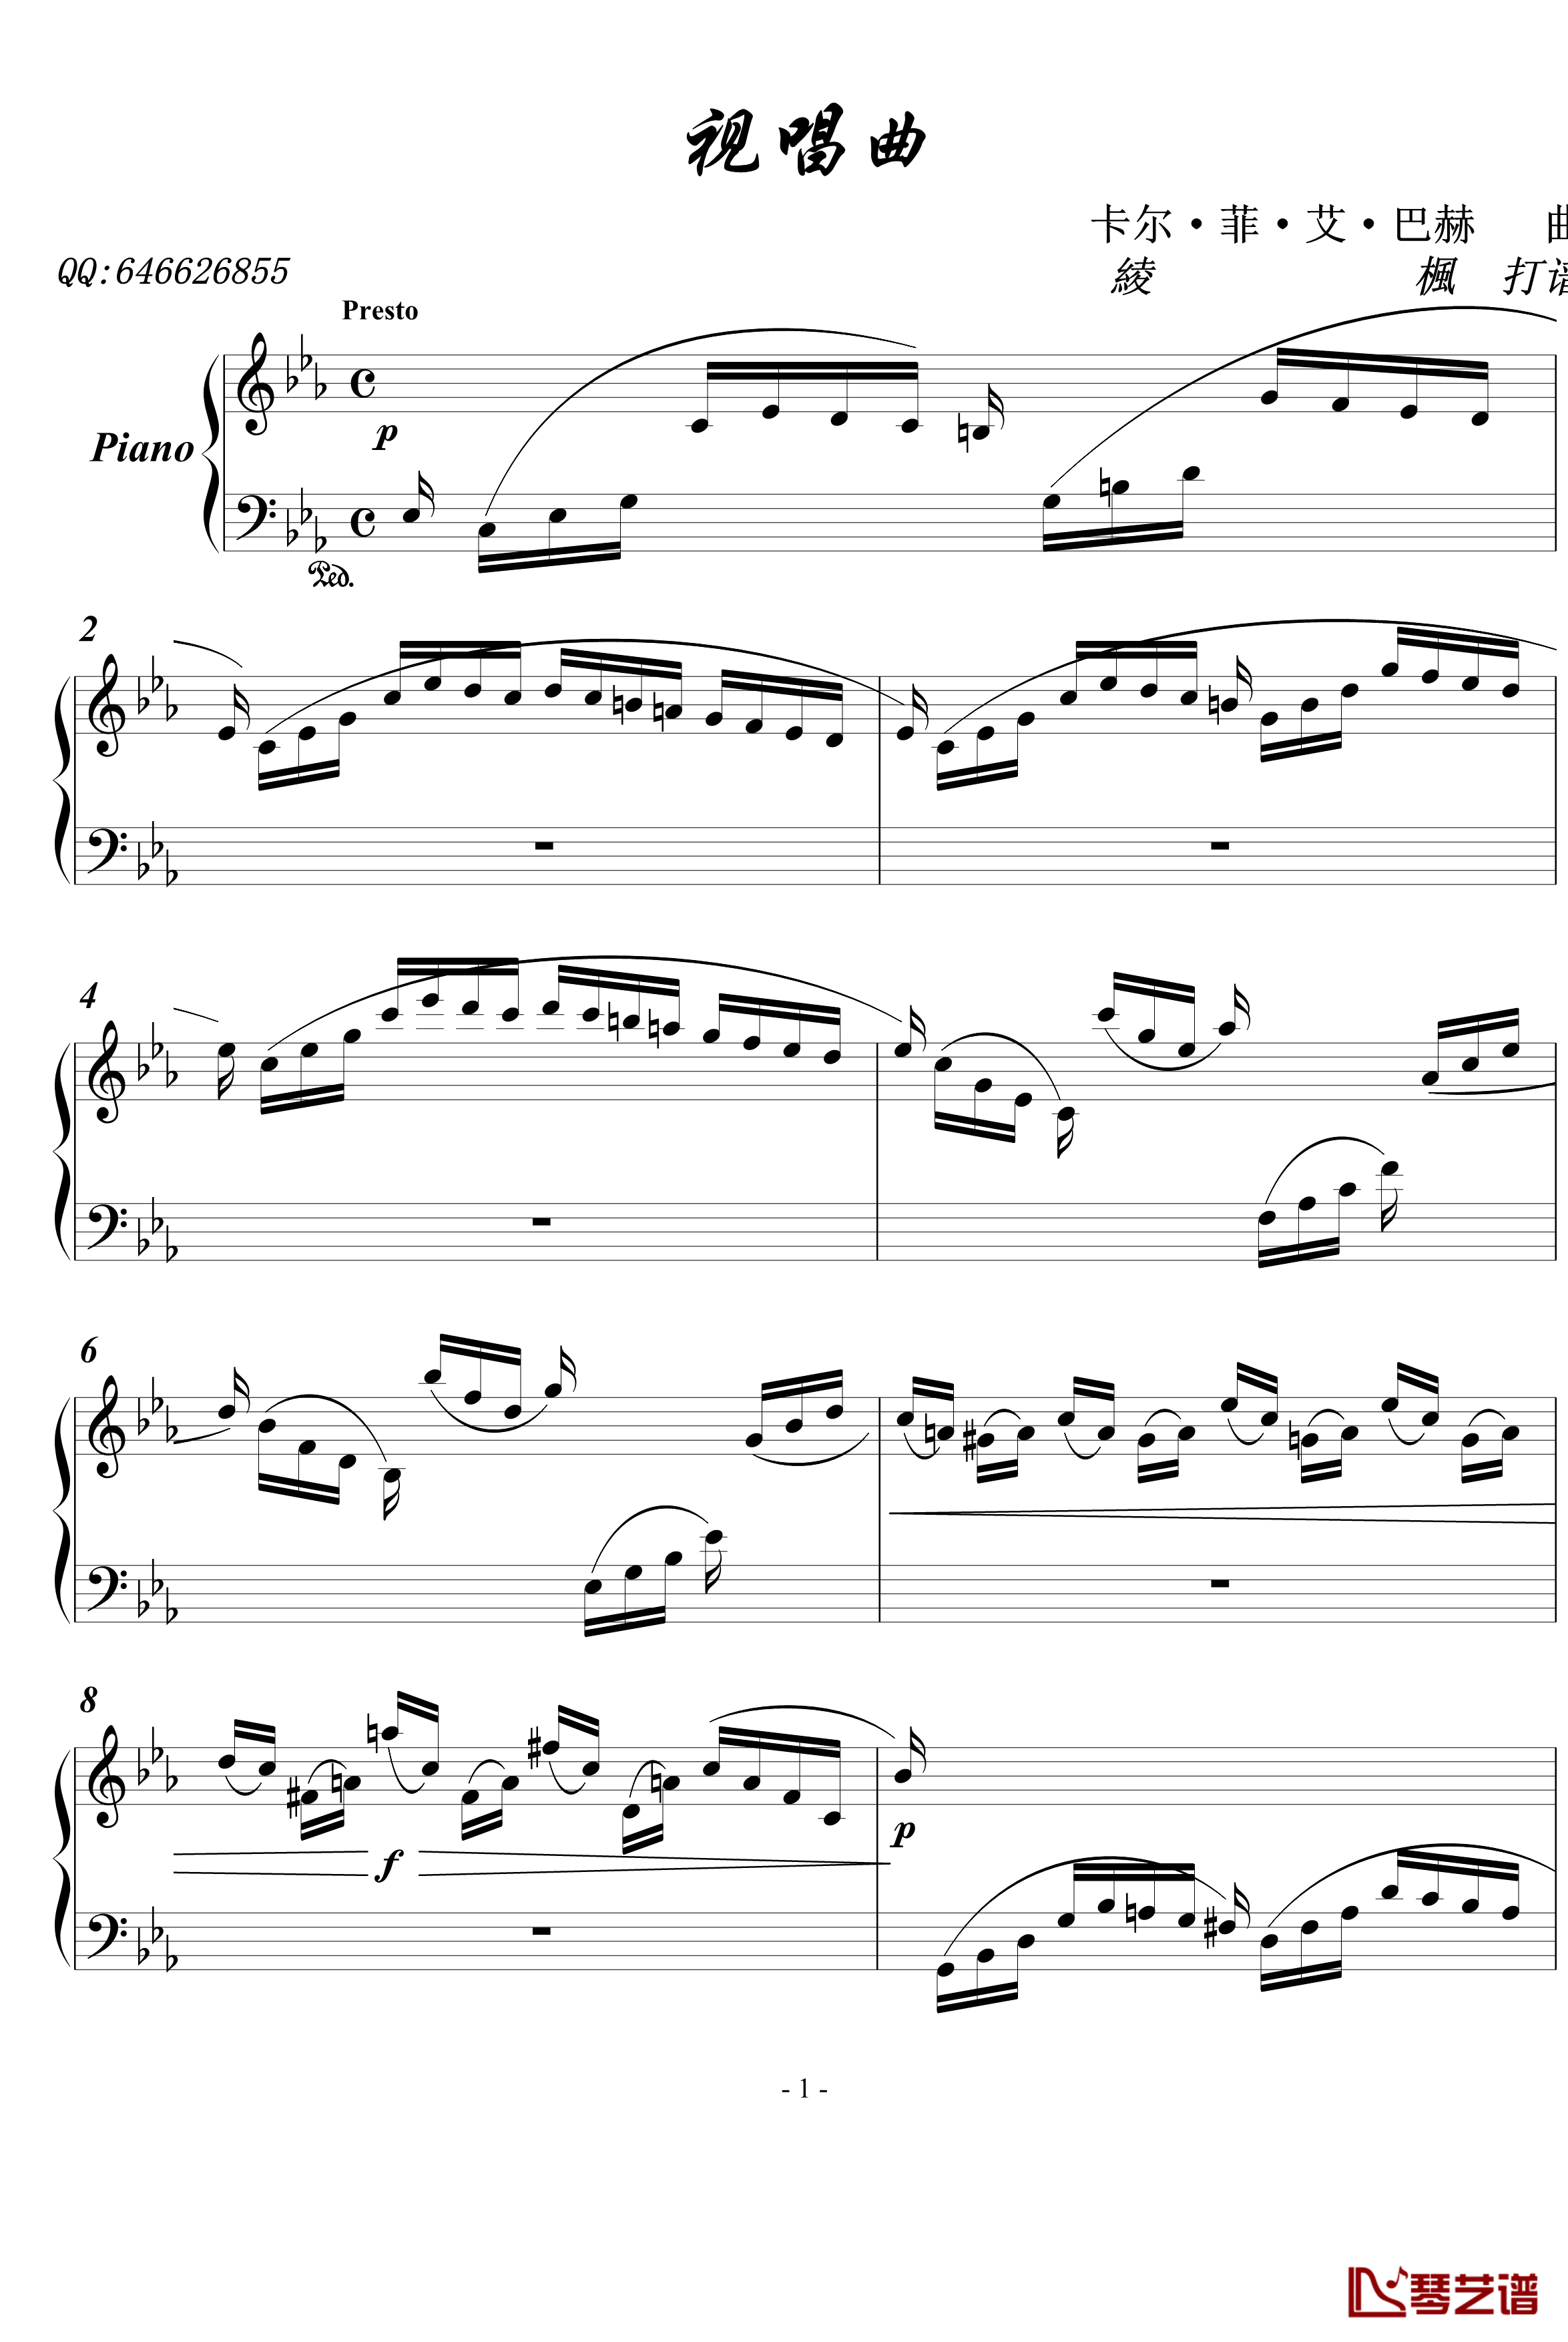 视唱曲钢琴谱-巴赫-P.E.Bach1